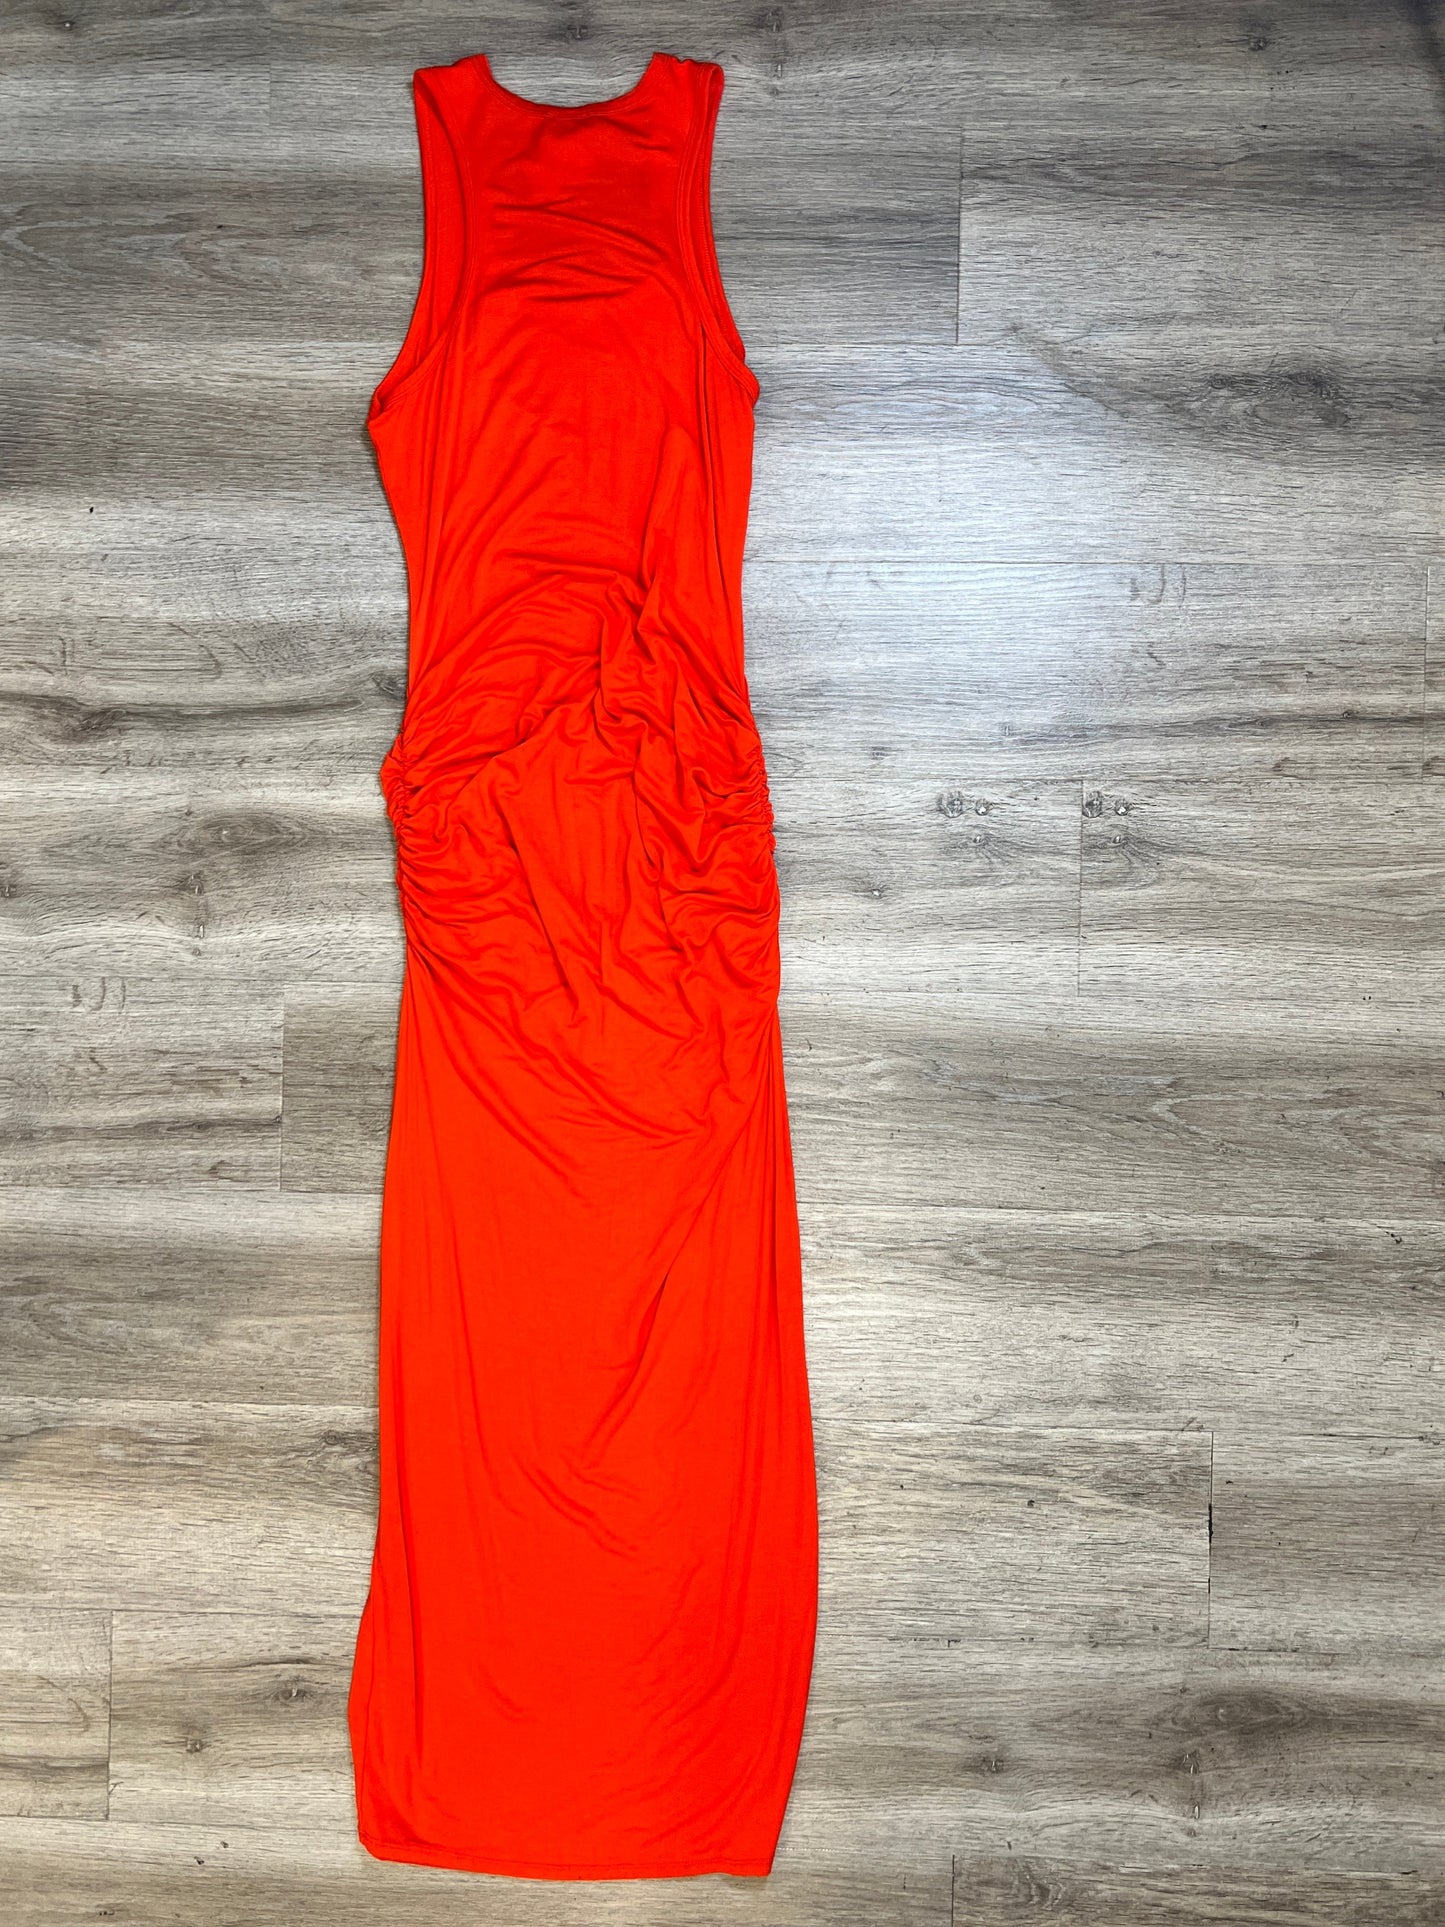 Dress Casual Maxi By Venus  Size: L